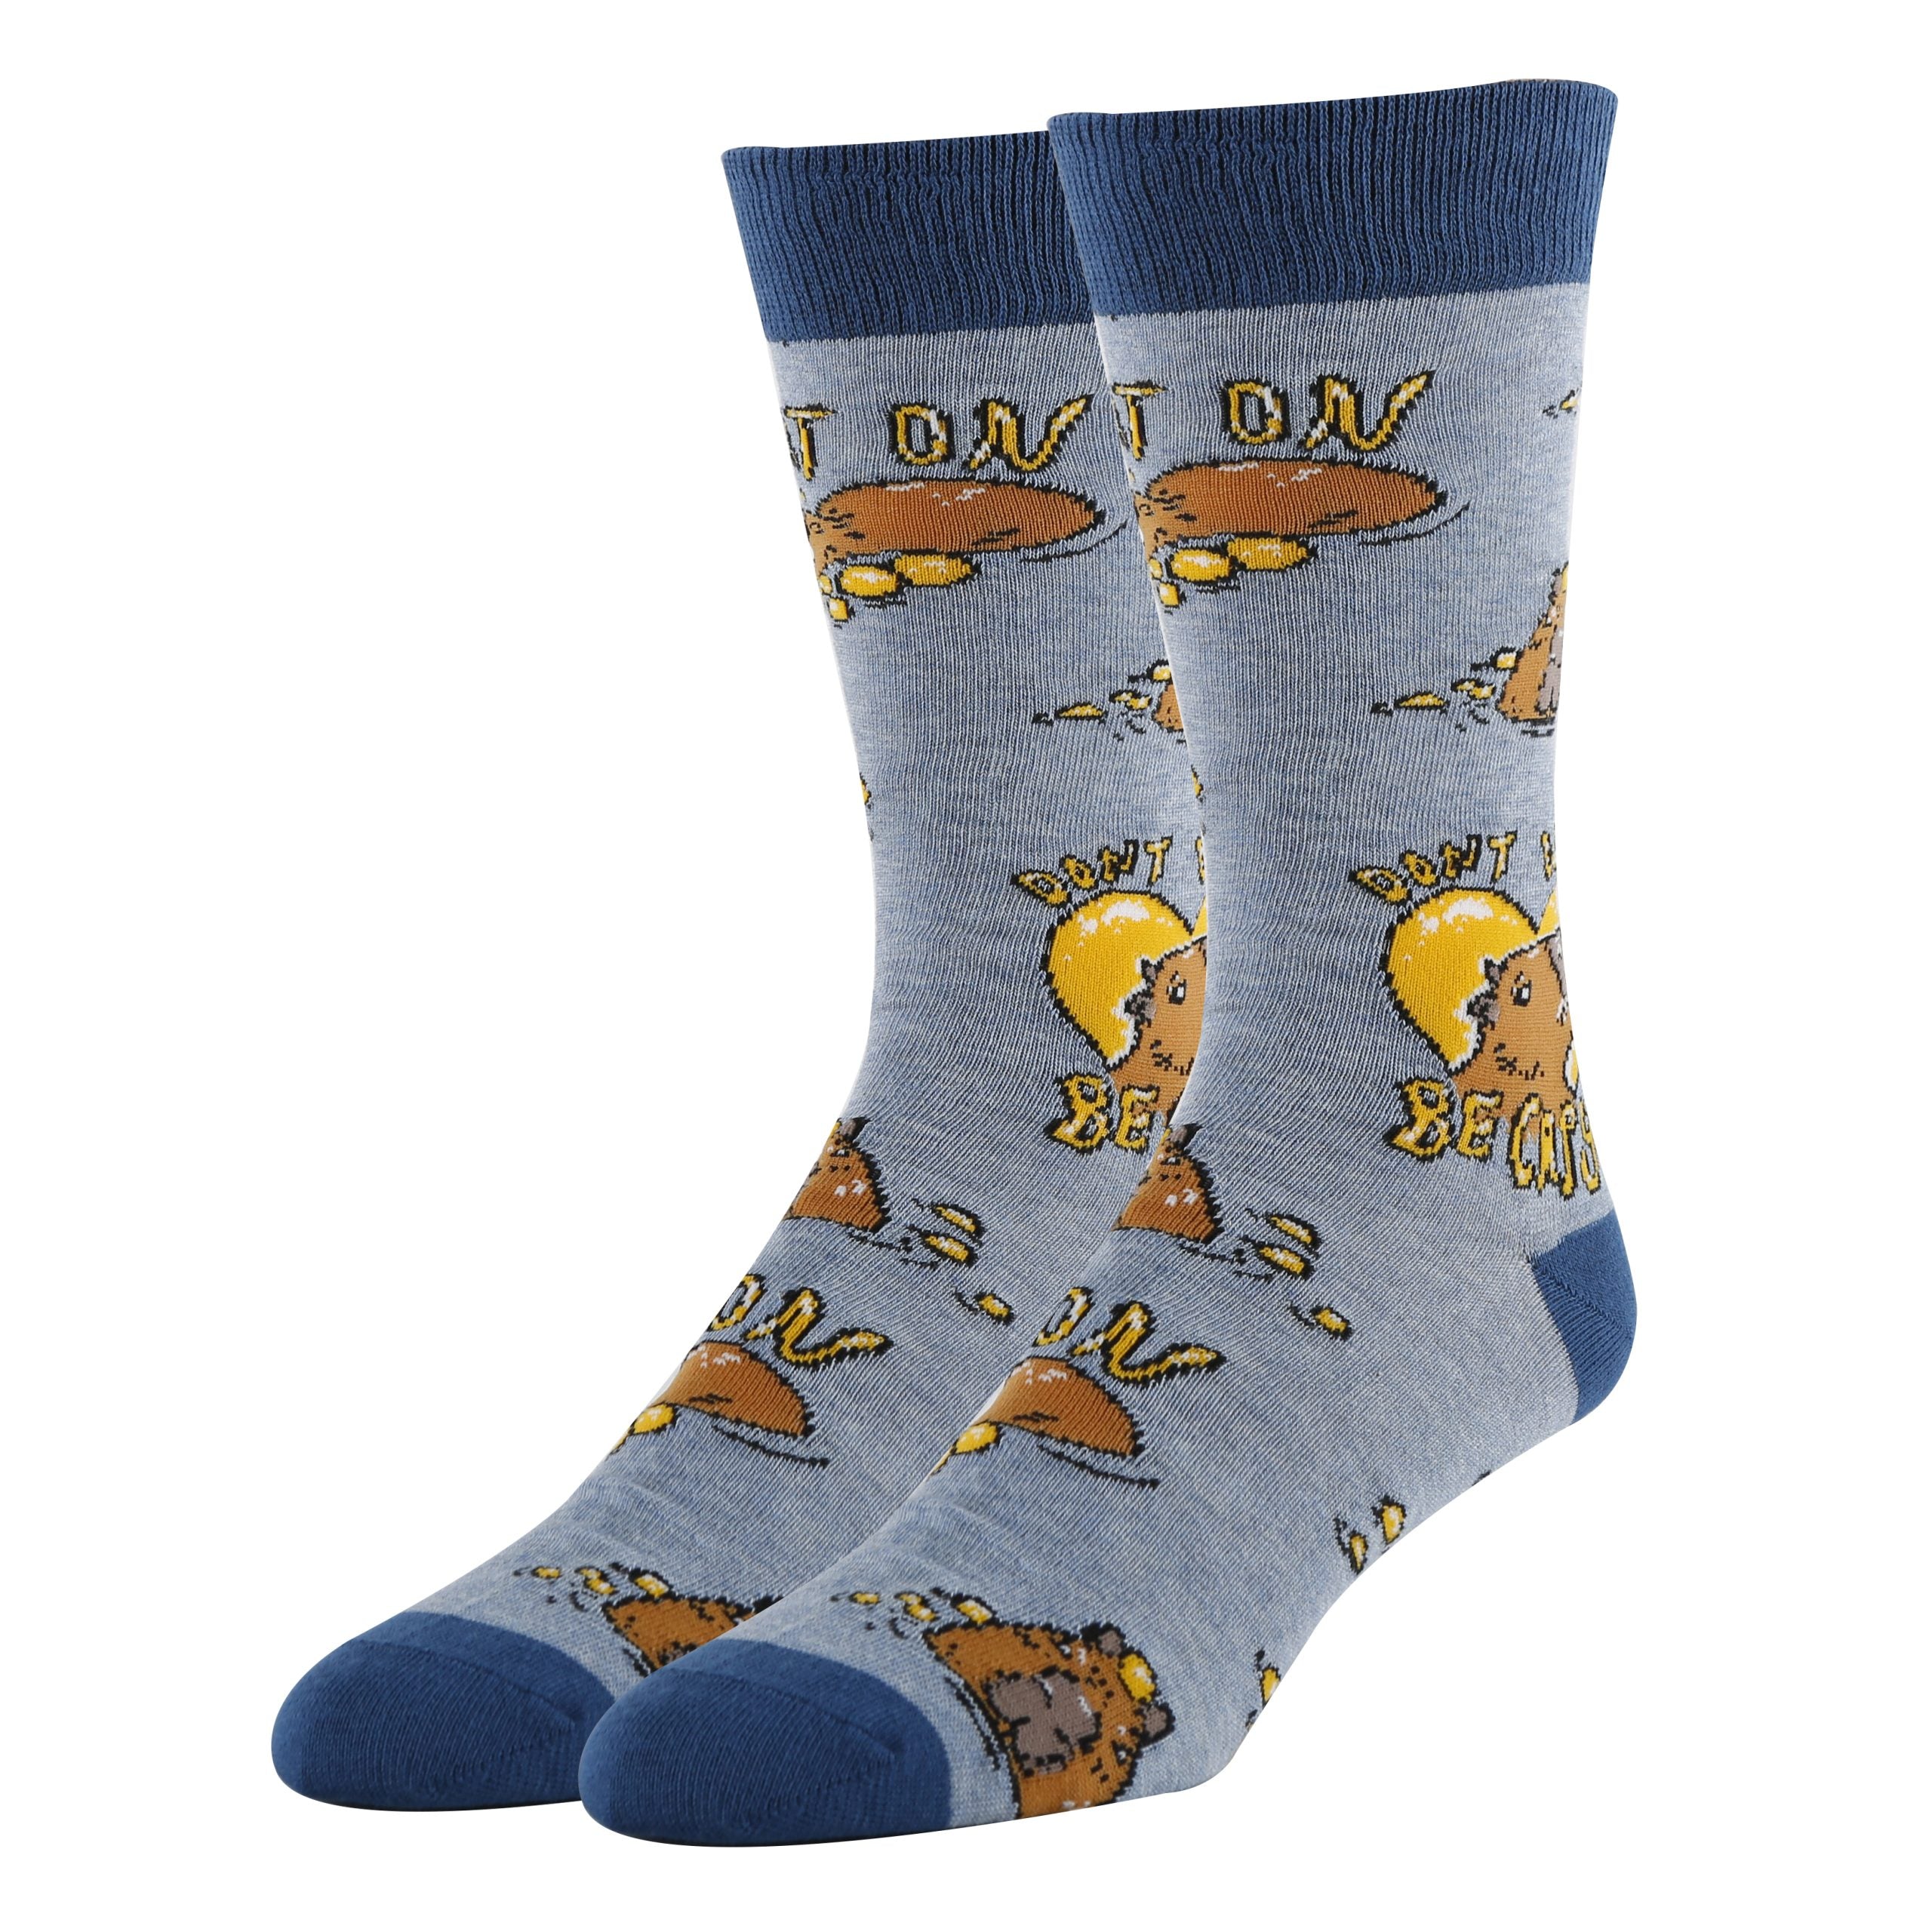 Be Capy Socks | Funny Crew Socks for Men